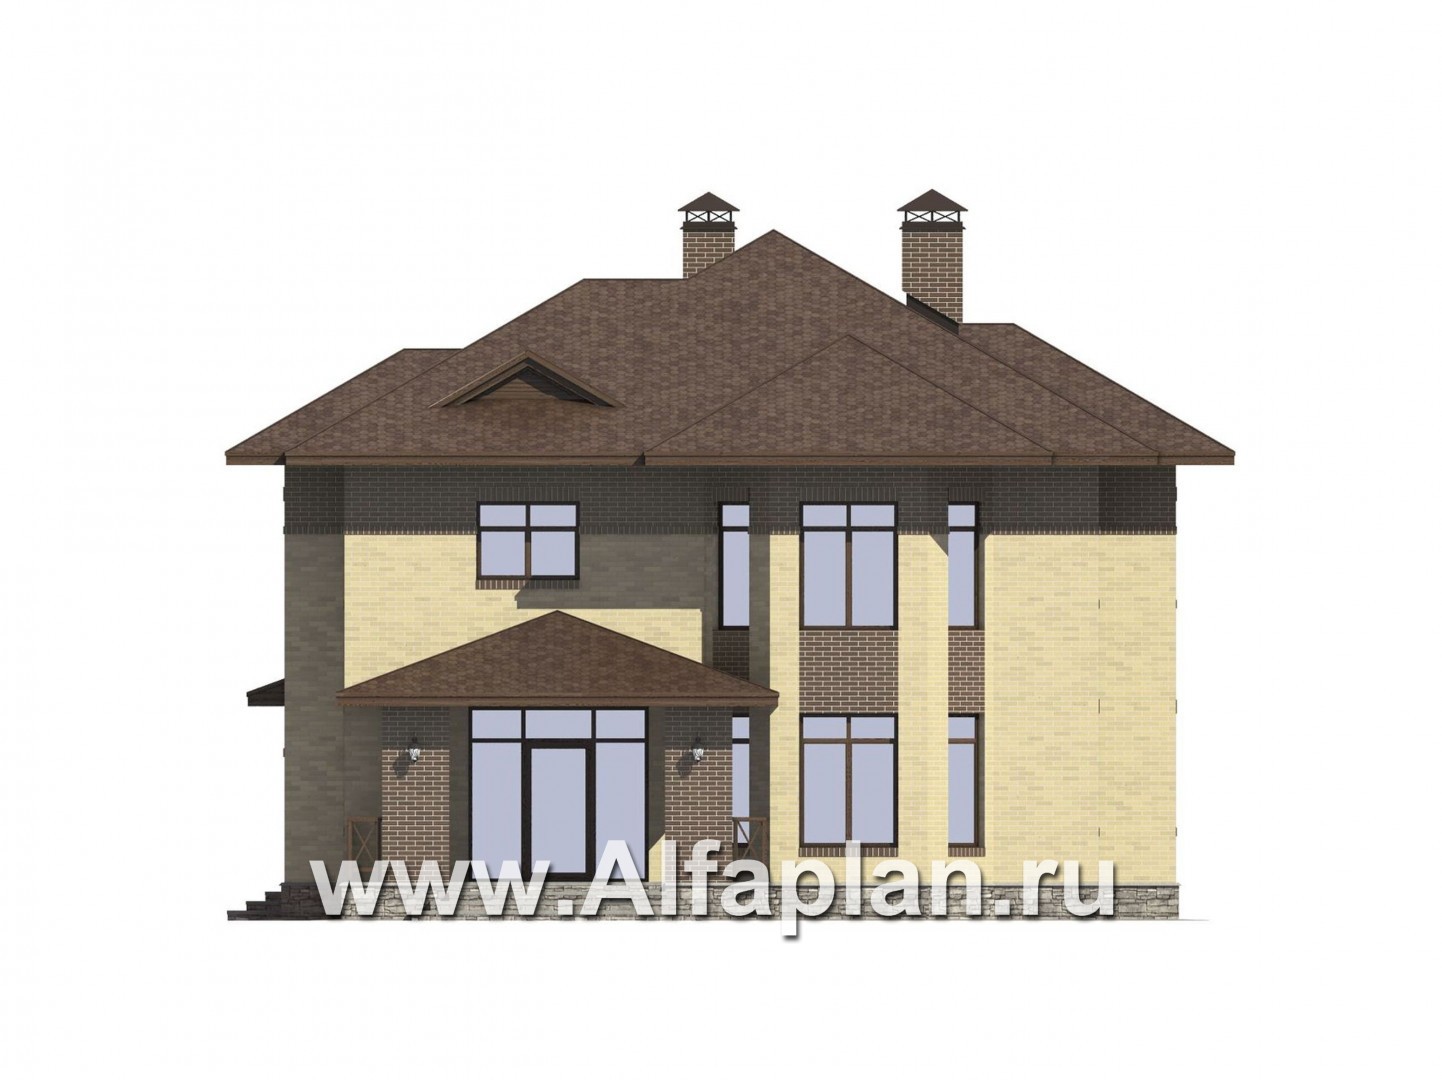 Проект двухэтажного дома, с эркером и с террасой, с навесом для авто - фасад дома